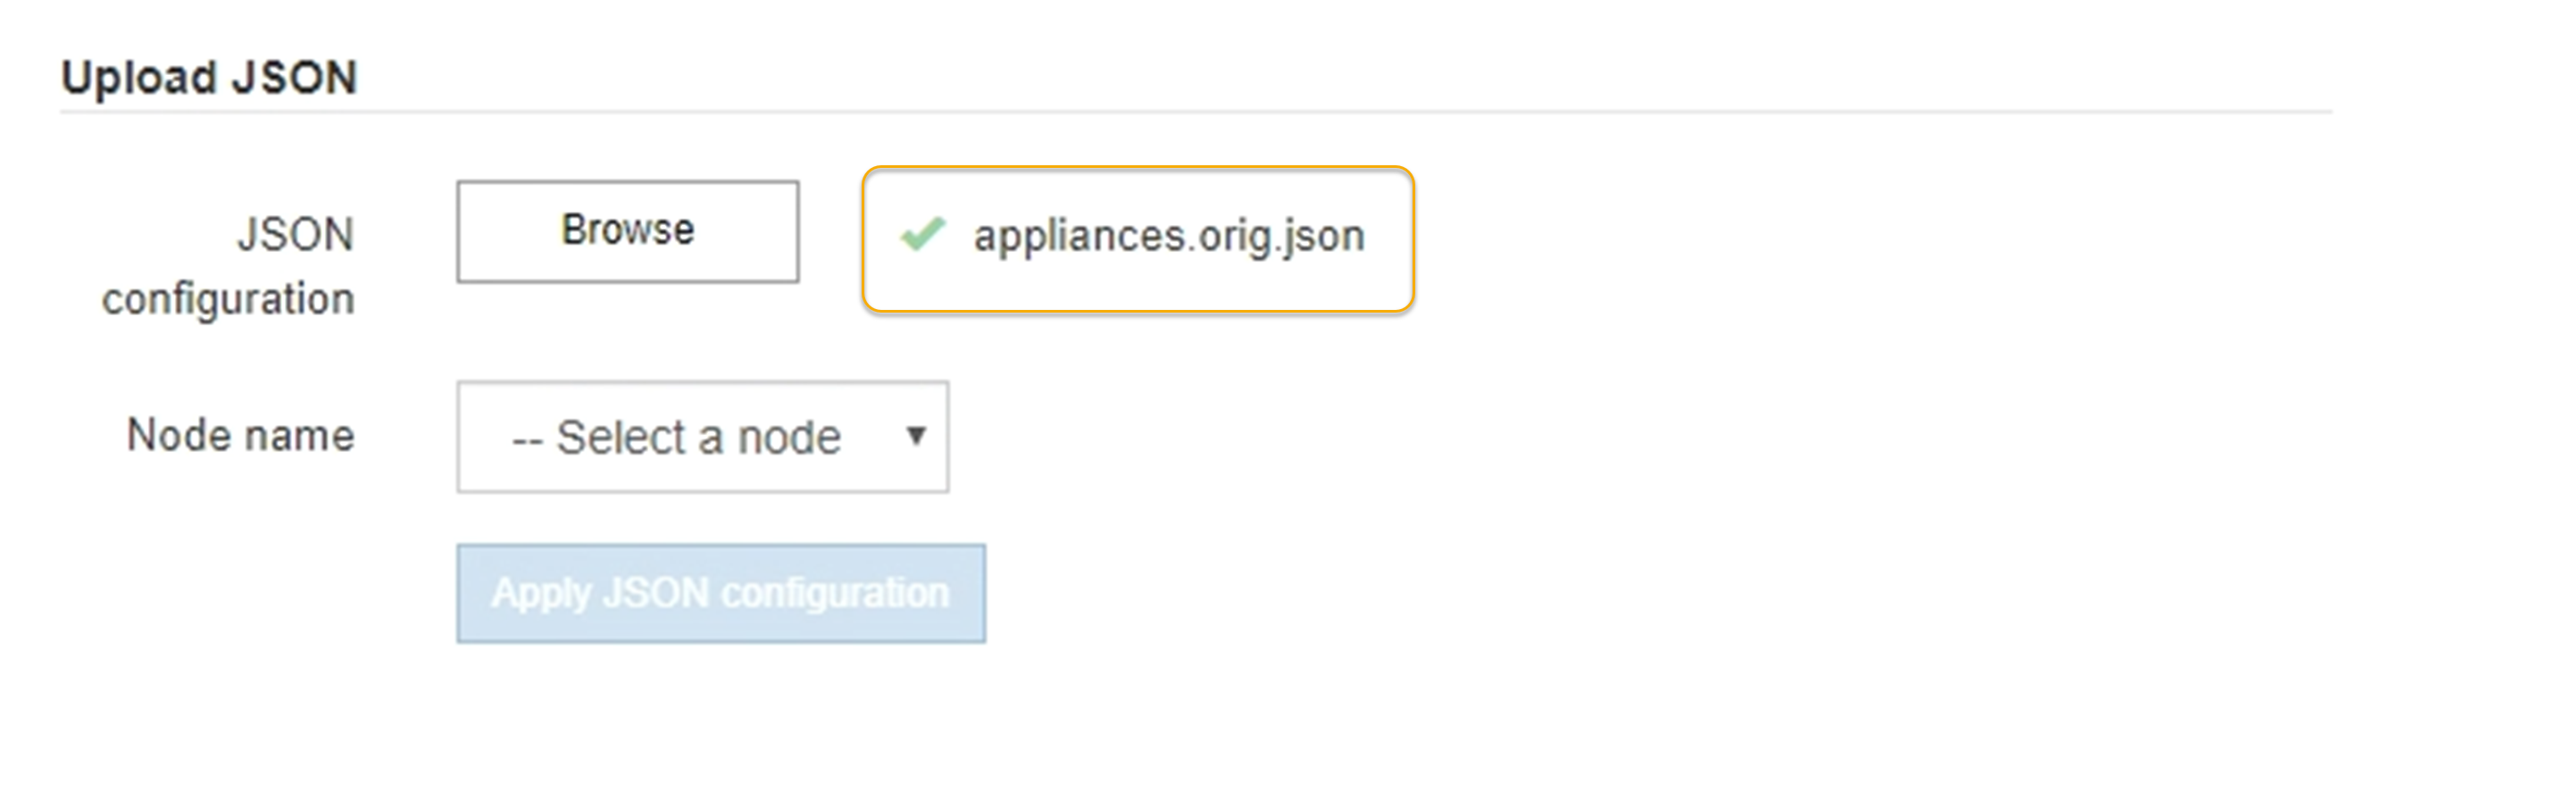 Aggiornamento della configurazione dell'appliance JSON caricato